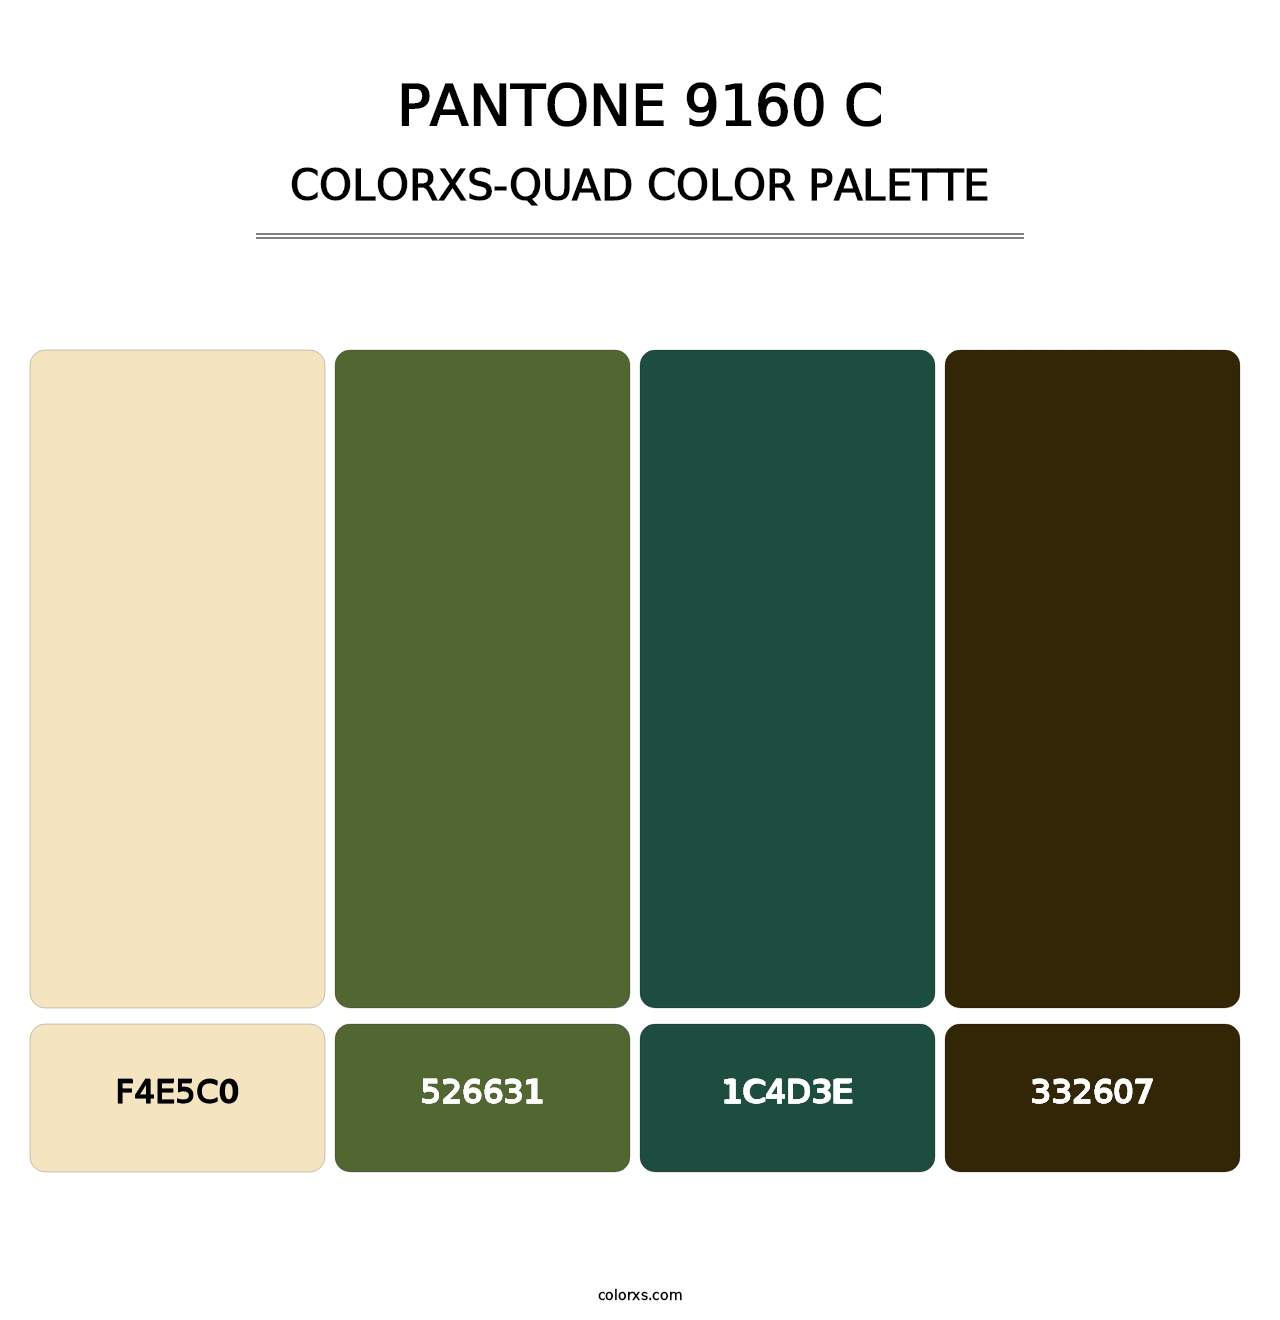 PANTONE 9160 C - Colorxs Quad Palette